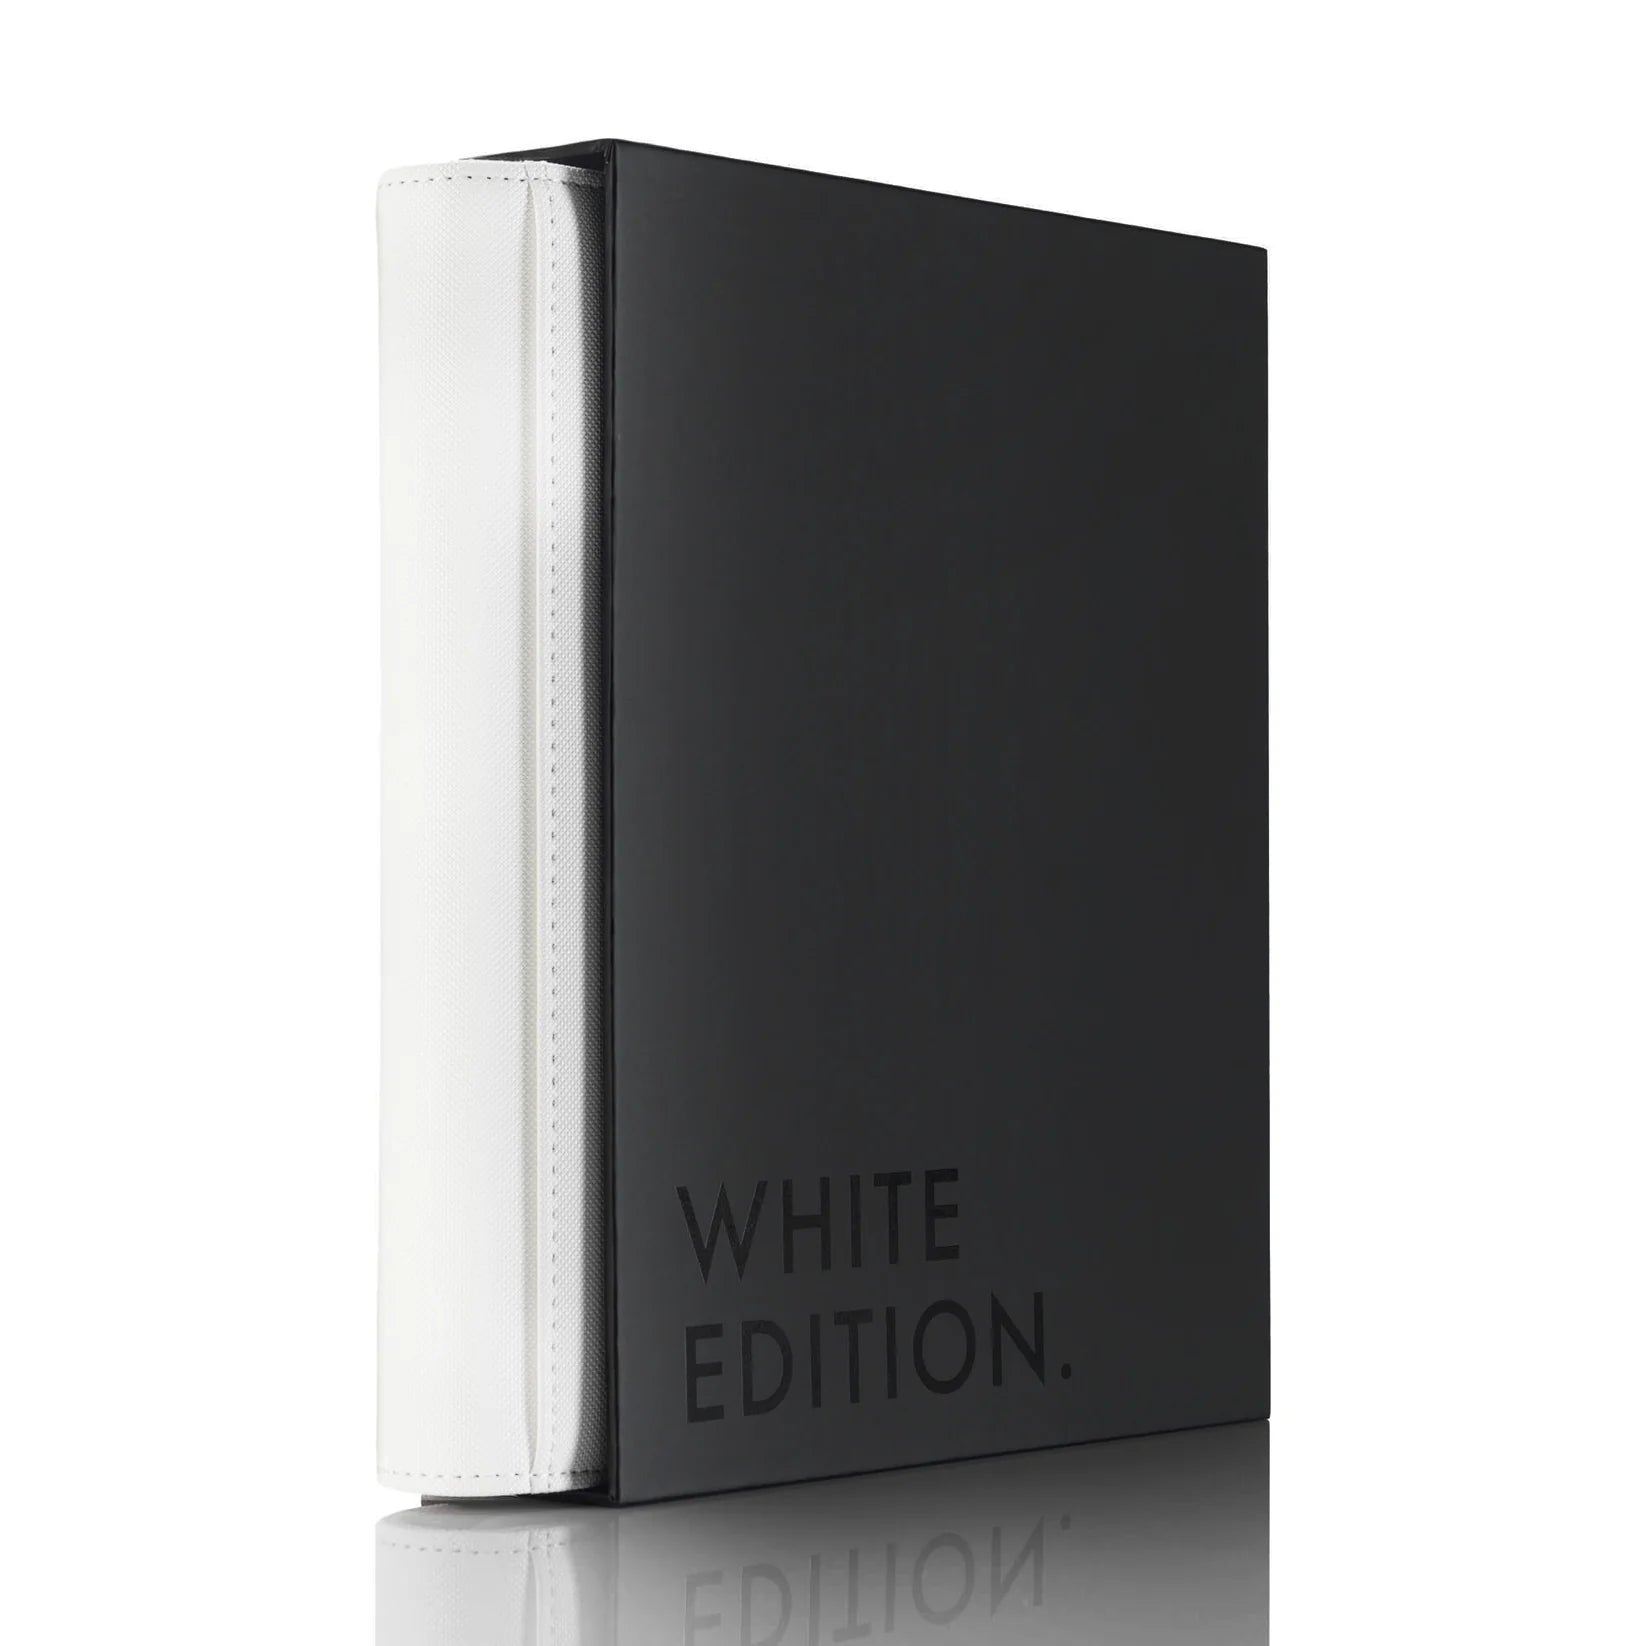 Vaultx - White Edition Zip Binder